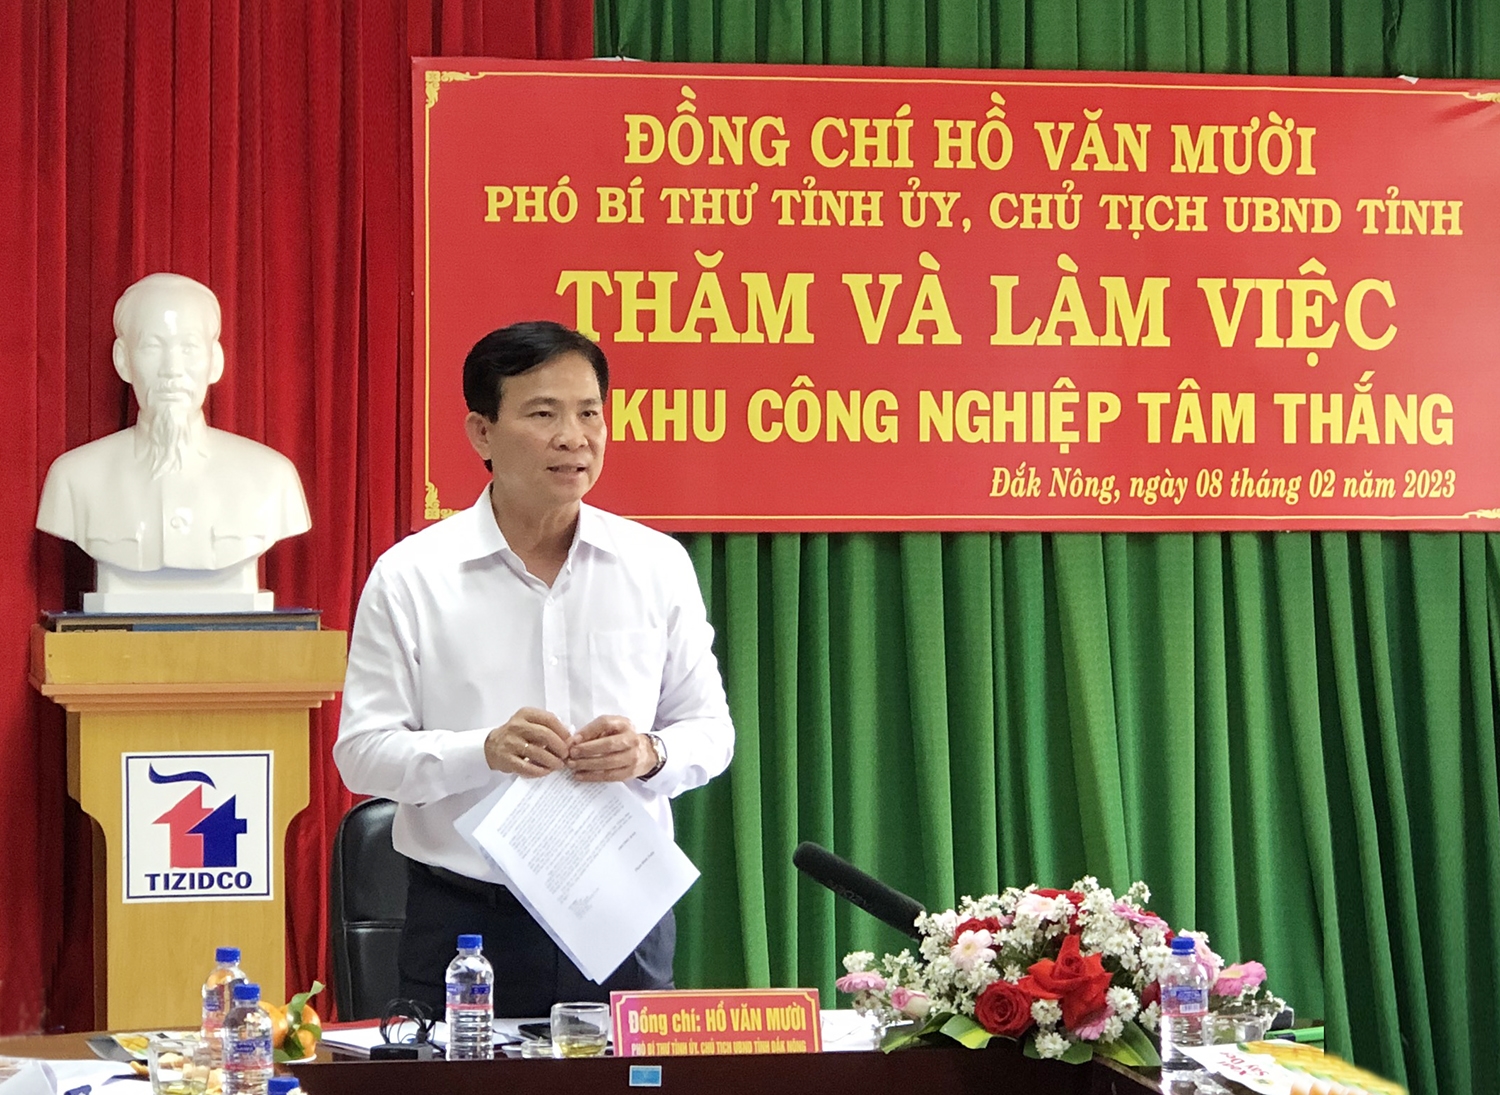 Phó Bí thư Tỉnh ủy, Chủ tịch UBND tỉnh Đắk Nông Hồ Văn Mười làm việc với Ban Quản lý các Khu công nghiệp tỉnh Đắk Nông